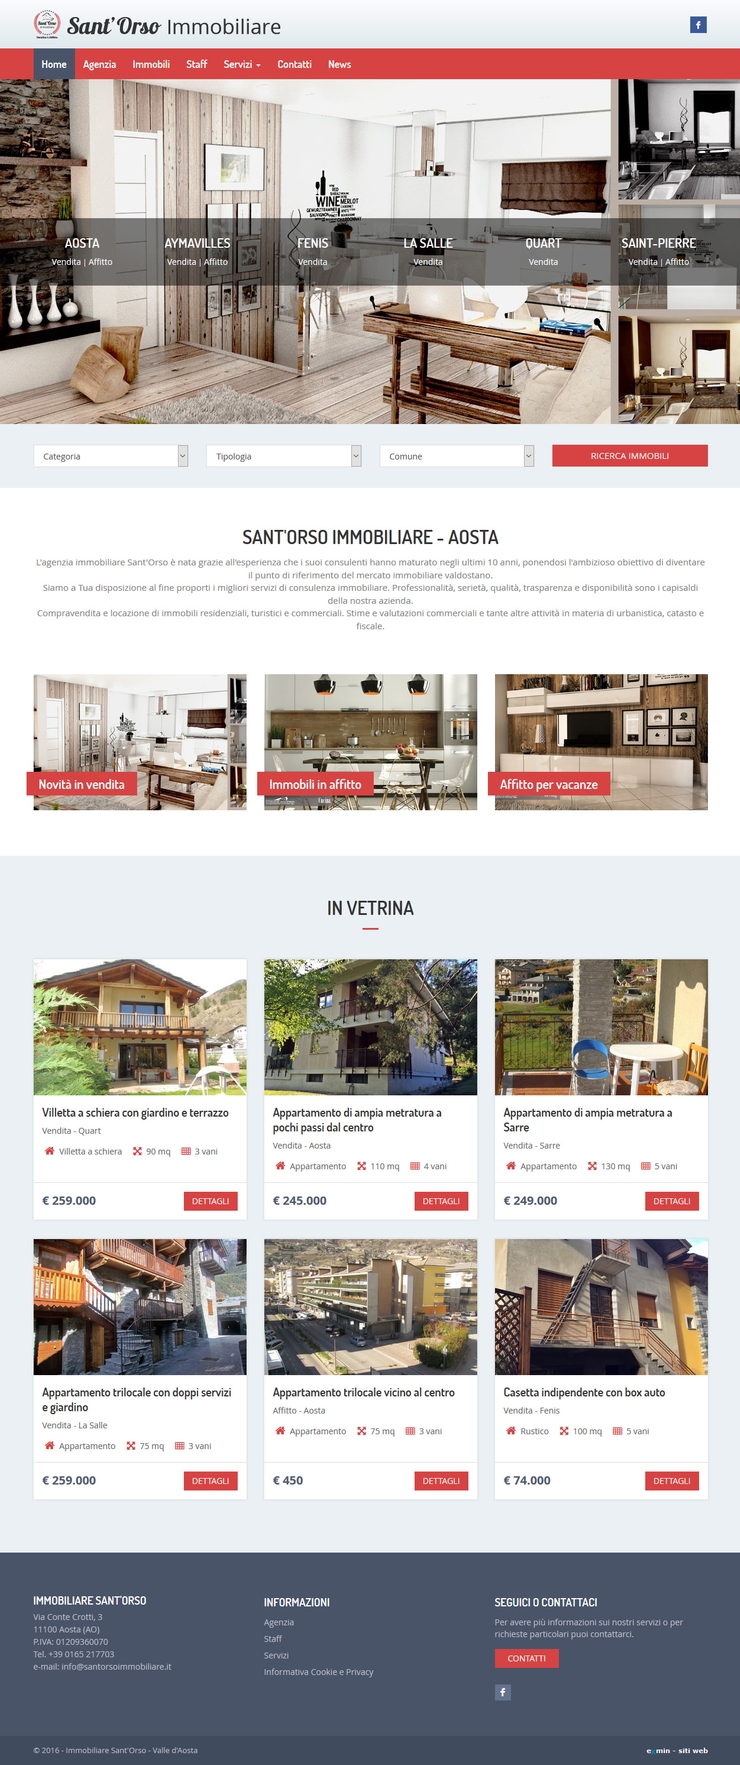 Sito web immobiliare Sant'Orso - Aosta